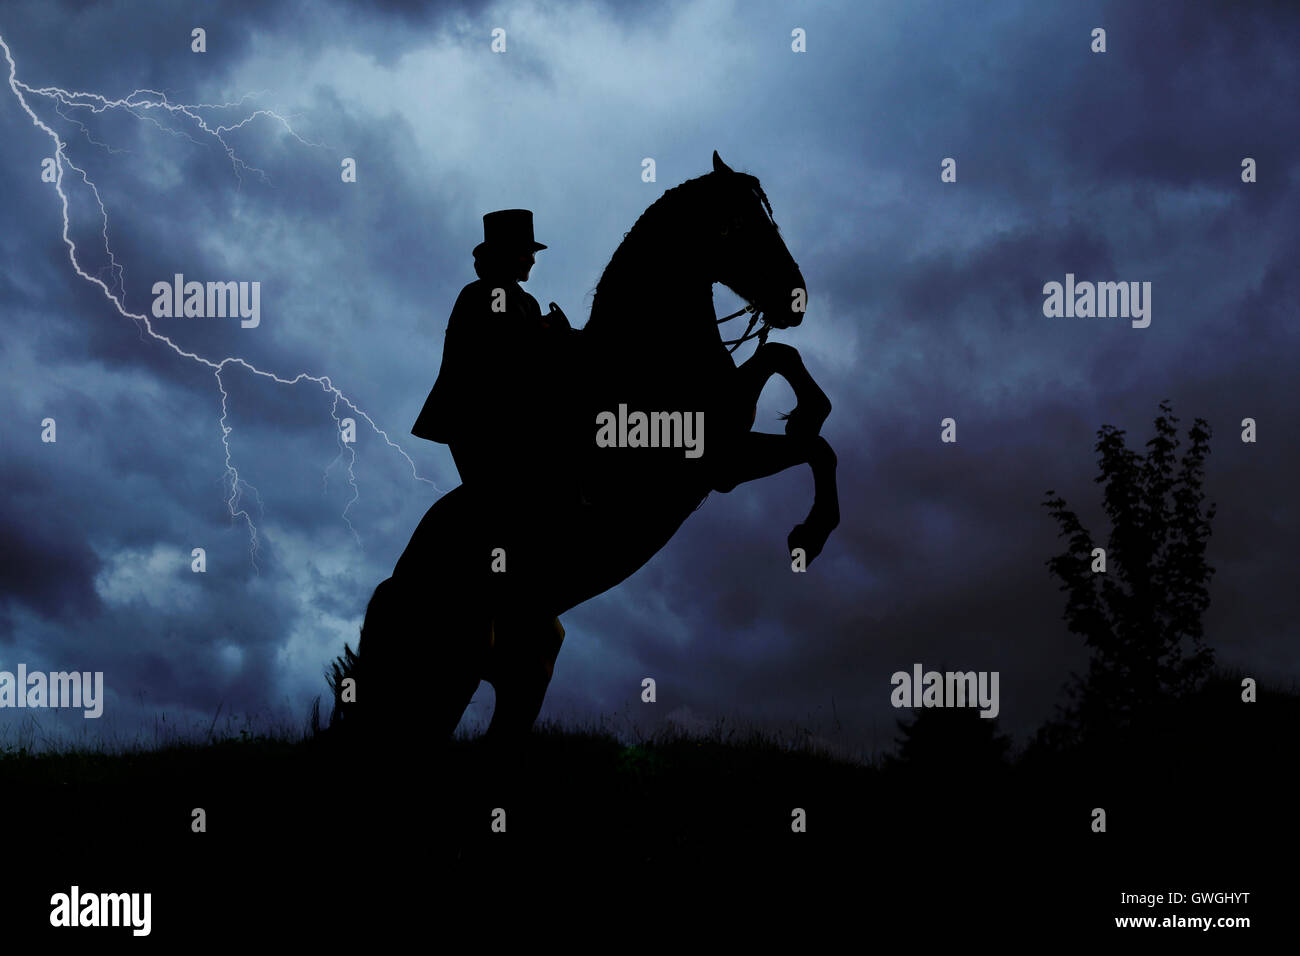 Freiberger Pferd, Franches-Montagnes. Fahrer mit Kostüm und sidesaddle auf  einem aufbäumenden Pferd, vor einem wolkigen Himmel mit Gewitter zu sehen.  Schweiz Stockfotografie - Alamy